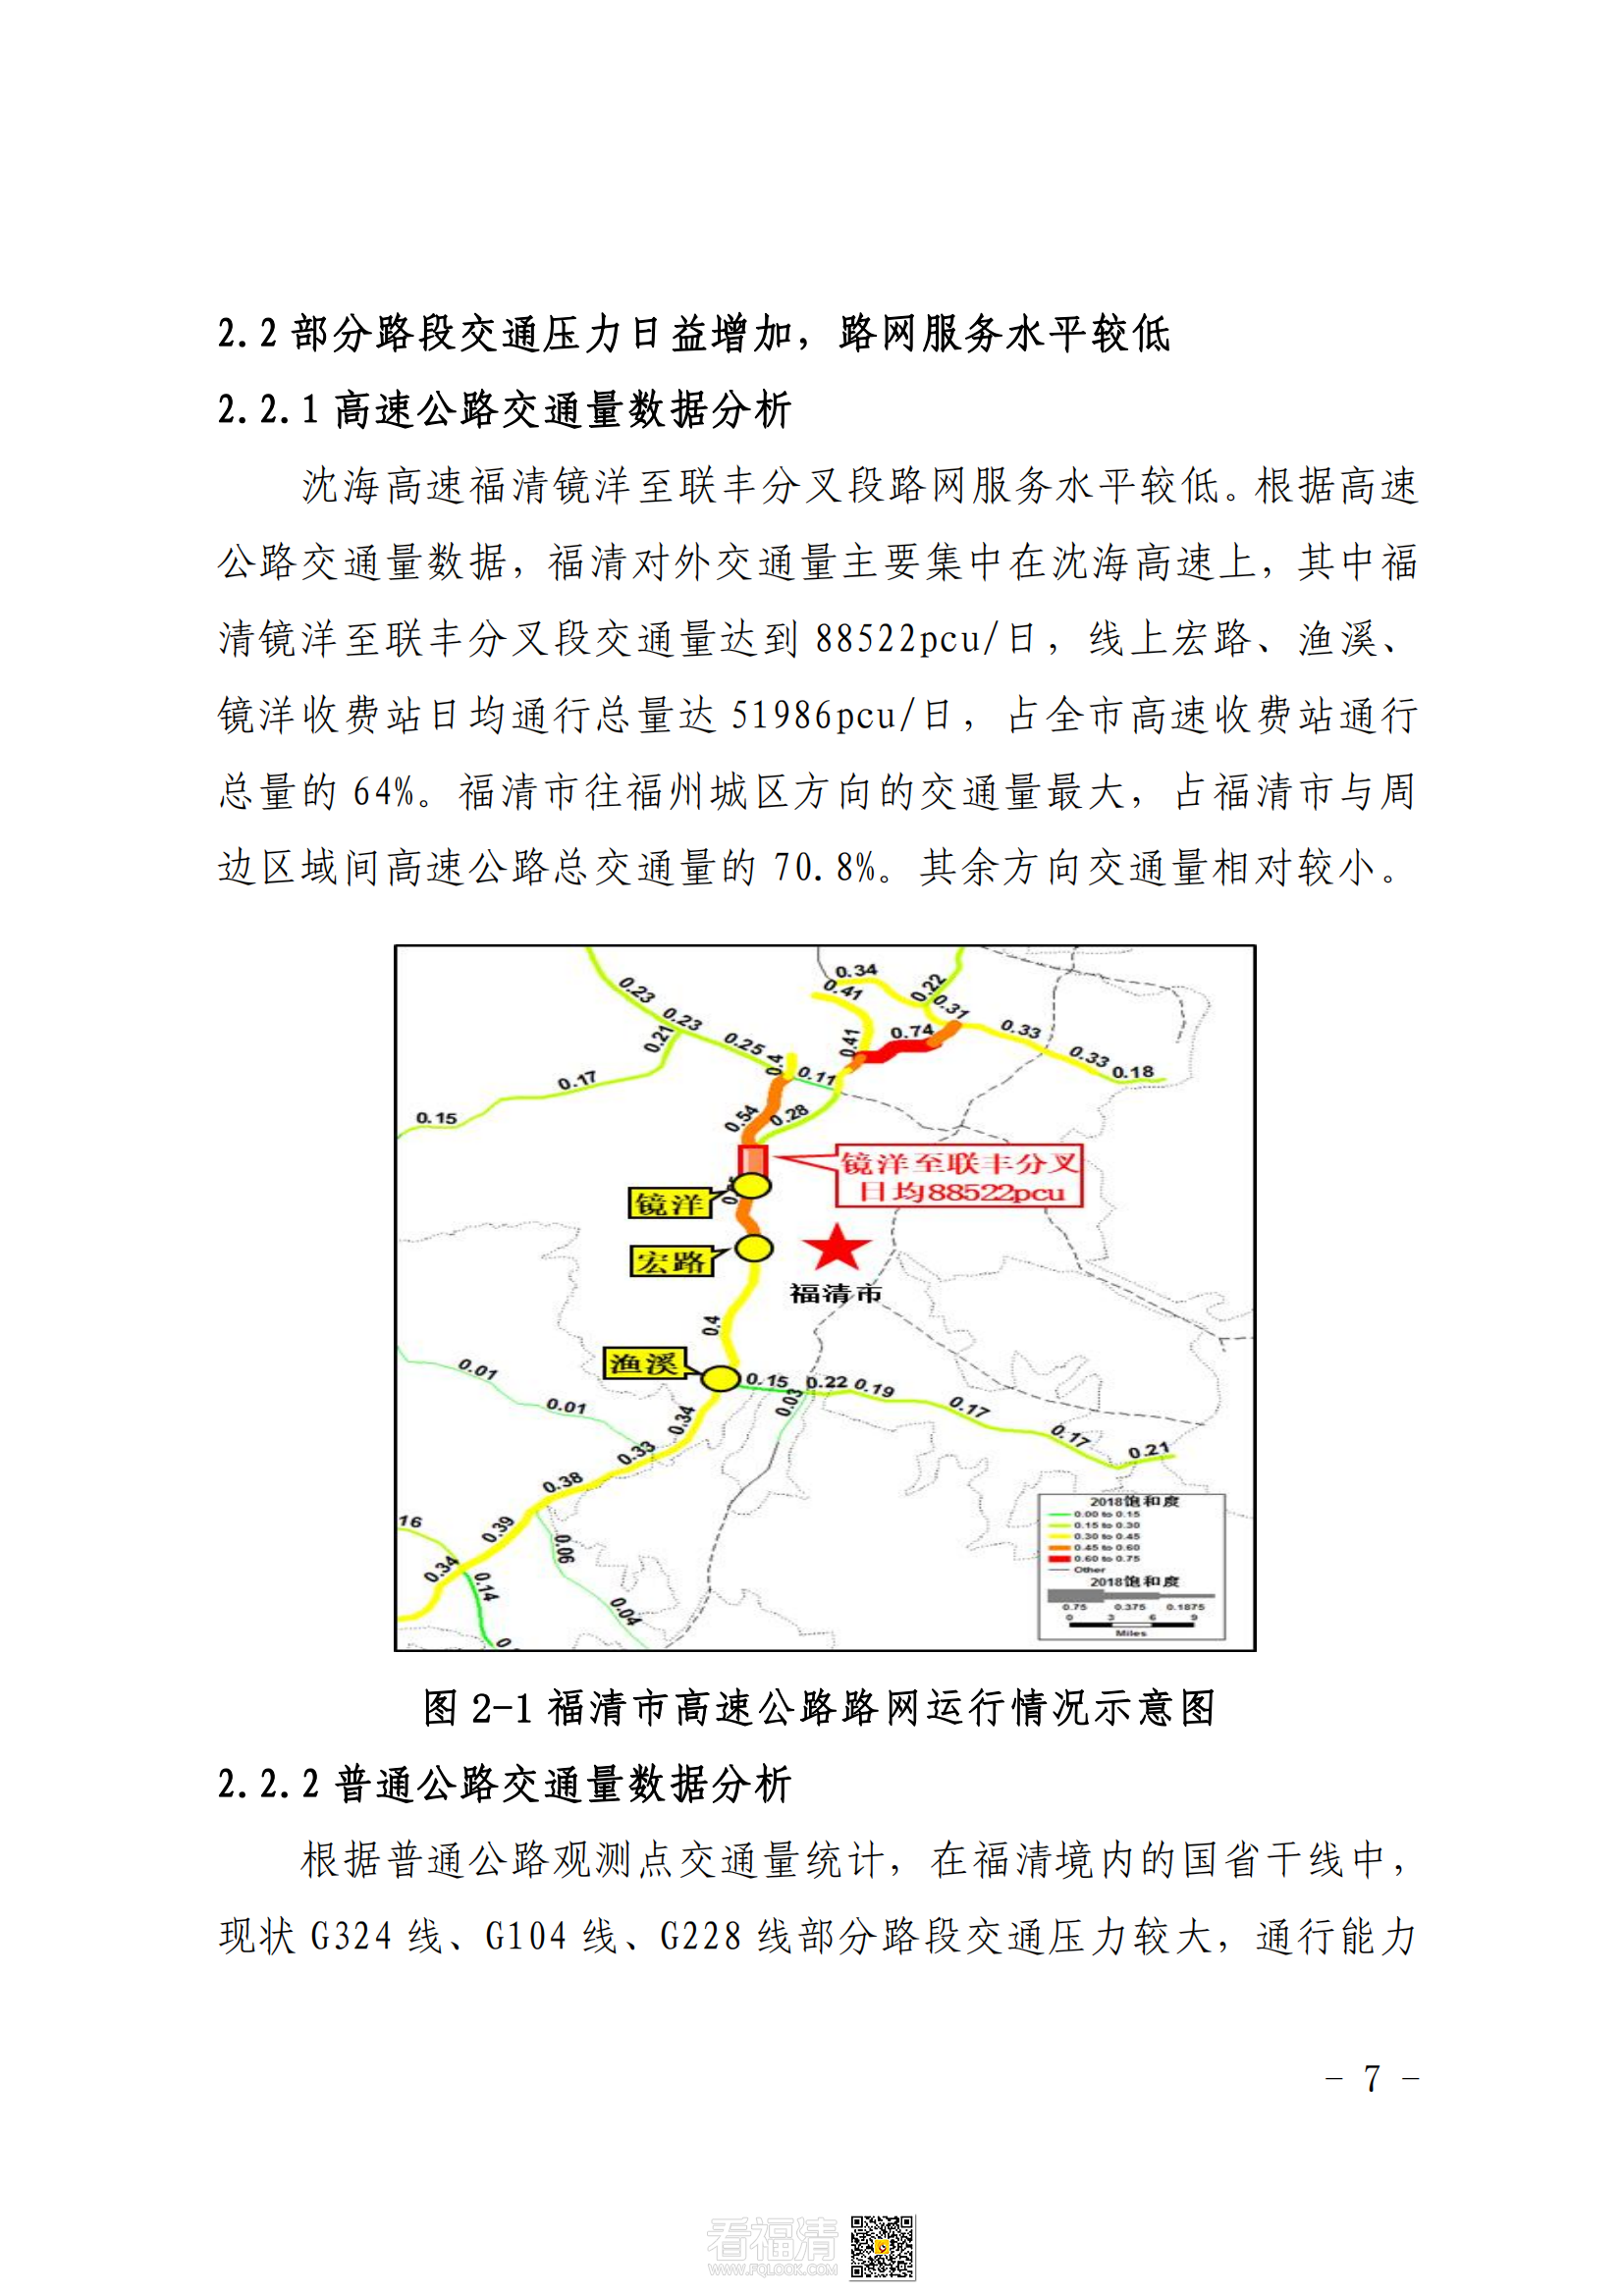 福清市公路干线路网规划（2021—2035）_10.png